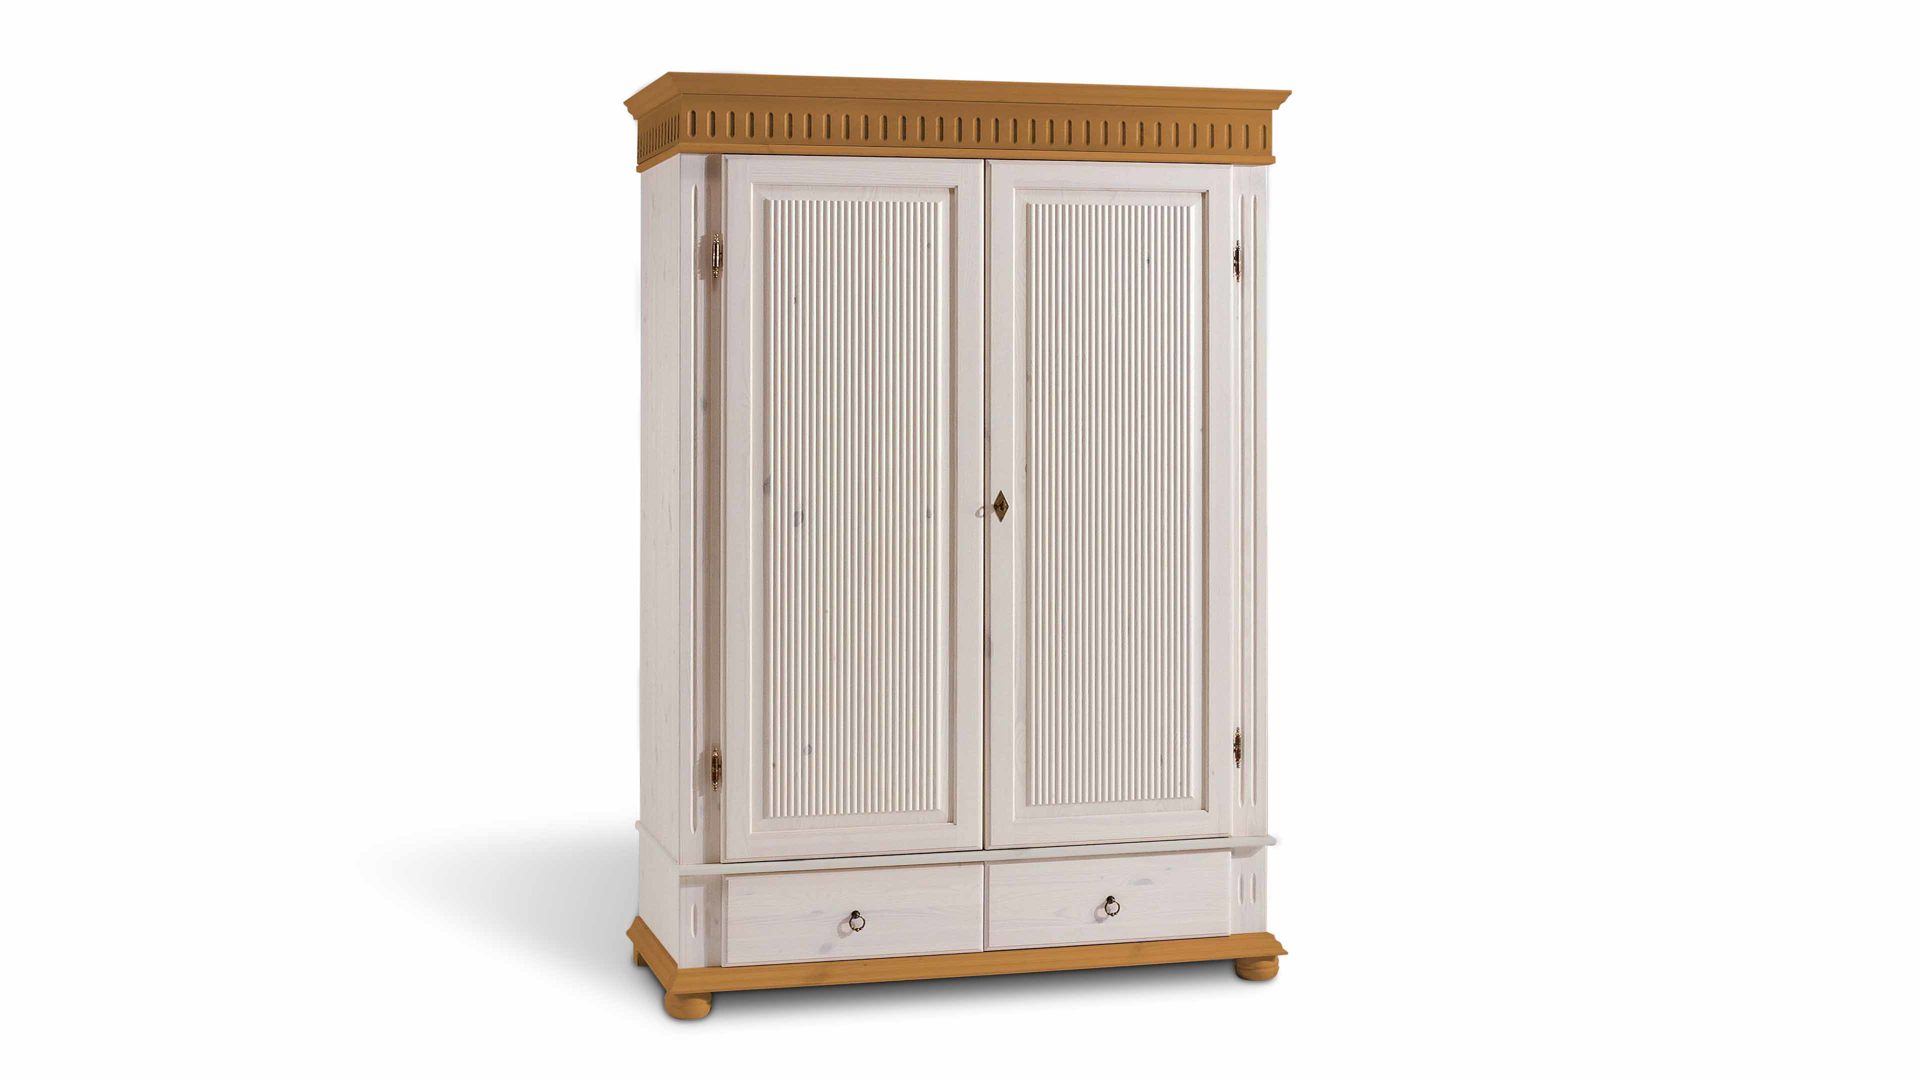 Kleiderschrank Euro diffusion aus Holz in Holzfarben Kleiderschrank für modern eingerichtete Schlafzimmer Antik & Weiß - zwei Türen, zwei Schubladen